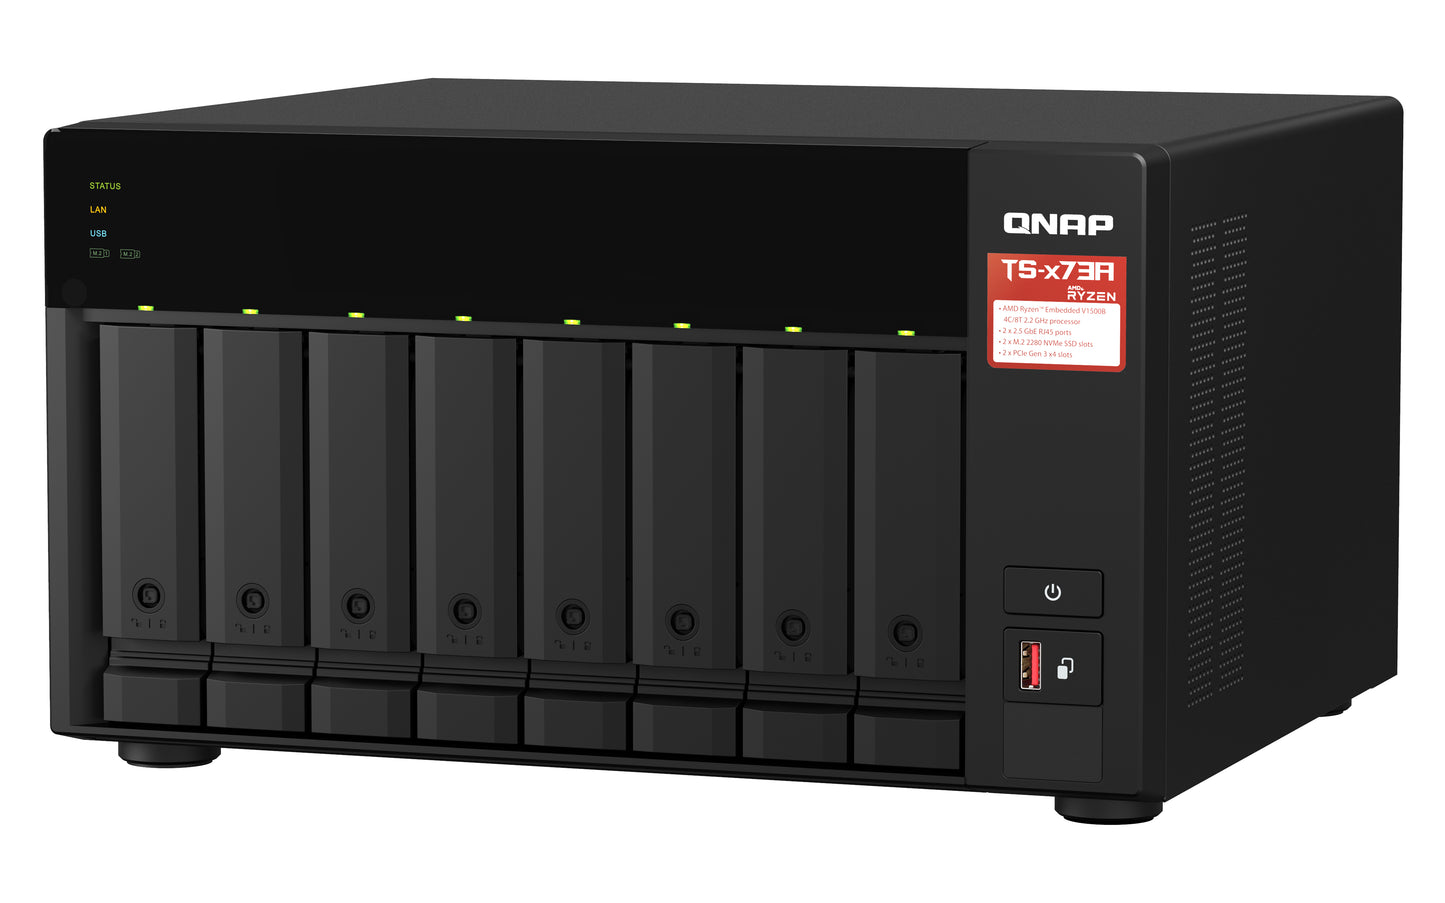 8-Bay Qnap TS-873A-8G 8 Bay NAS Enclosure - Storage Server - NAS